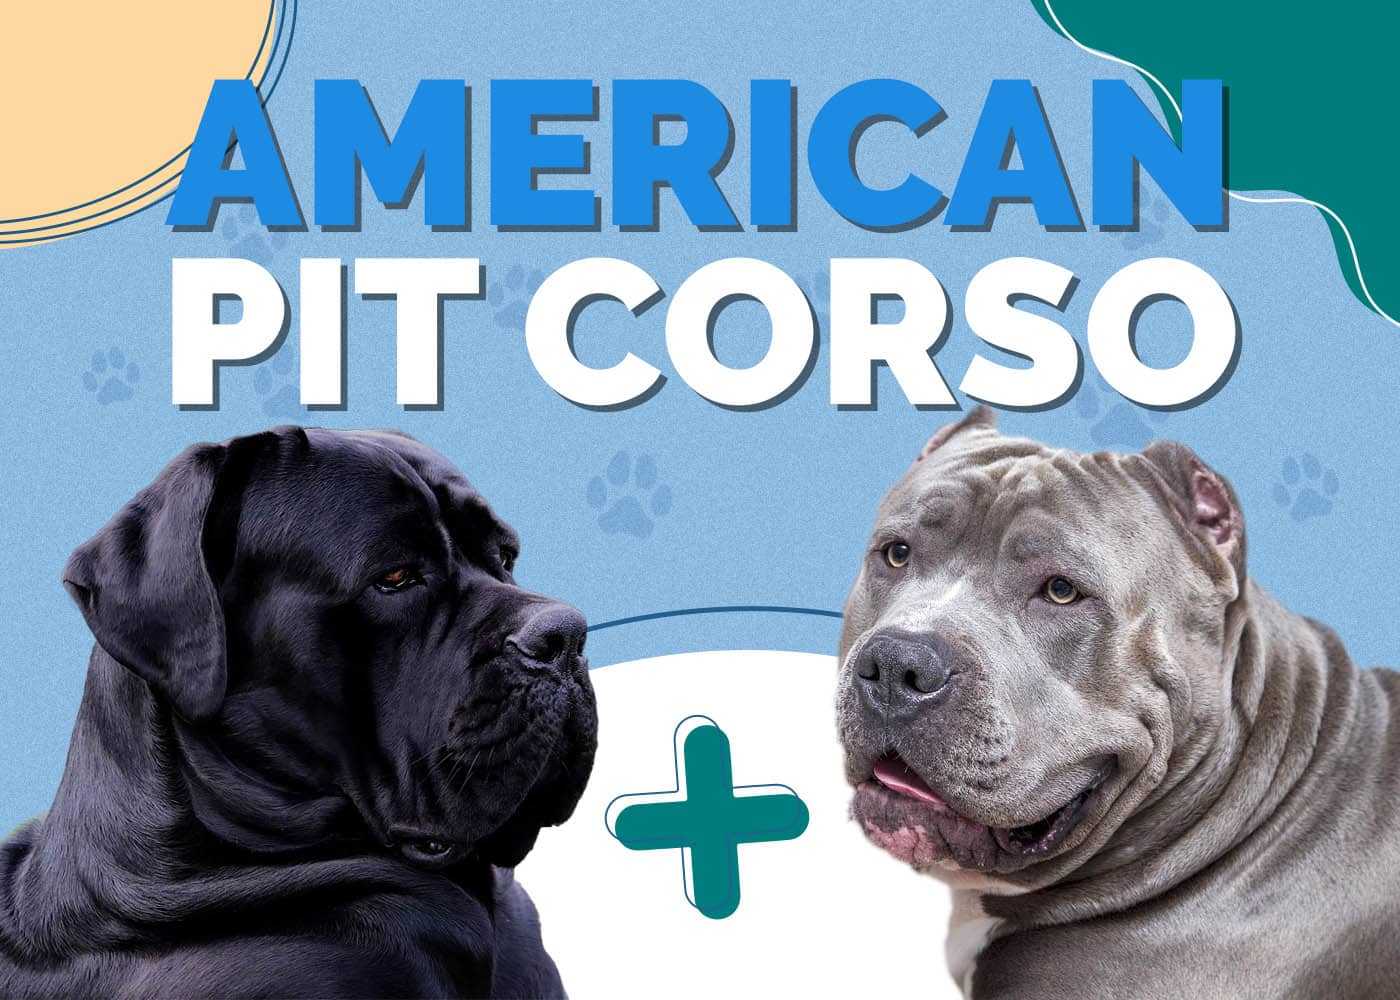 American Pit Corso (American Pitbull Terrier & Cane Corso Mix)